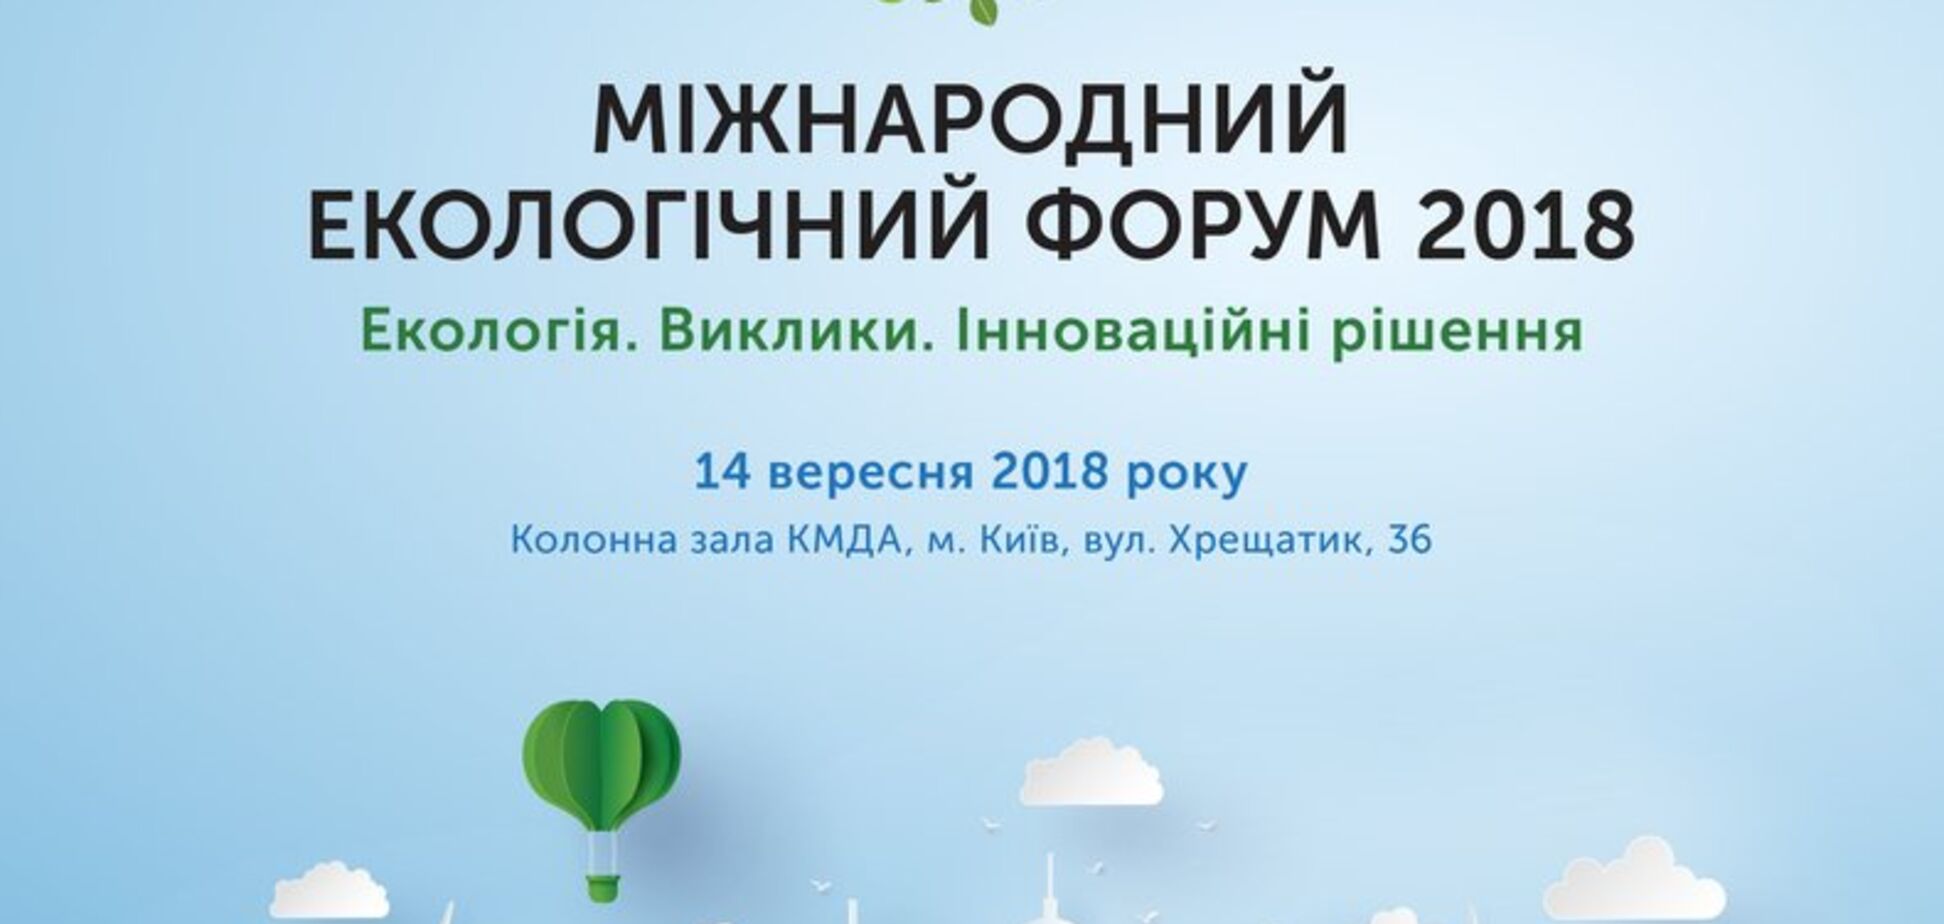 В Києві відбудеться Міжнародний екологічний форум 'Екологія: сучасний стан, завдання, виклики та пошук нових можливостей  збереження навколишнього середовища'